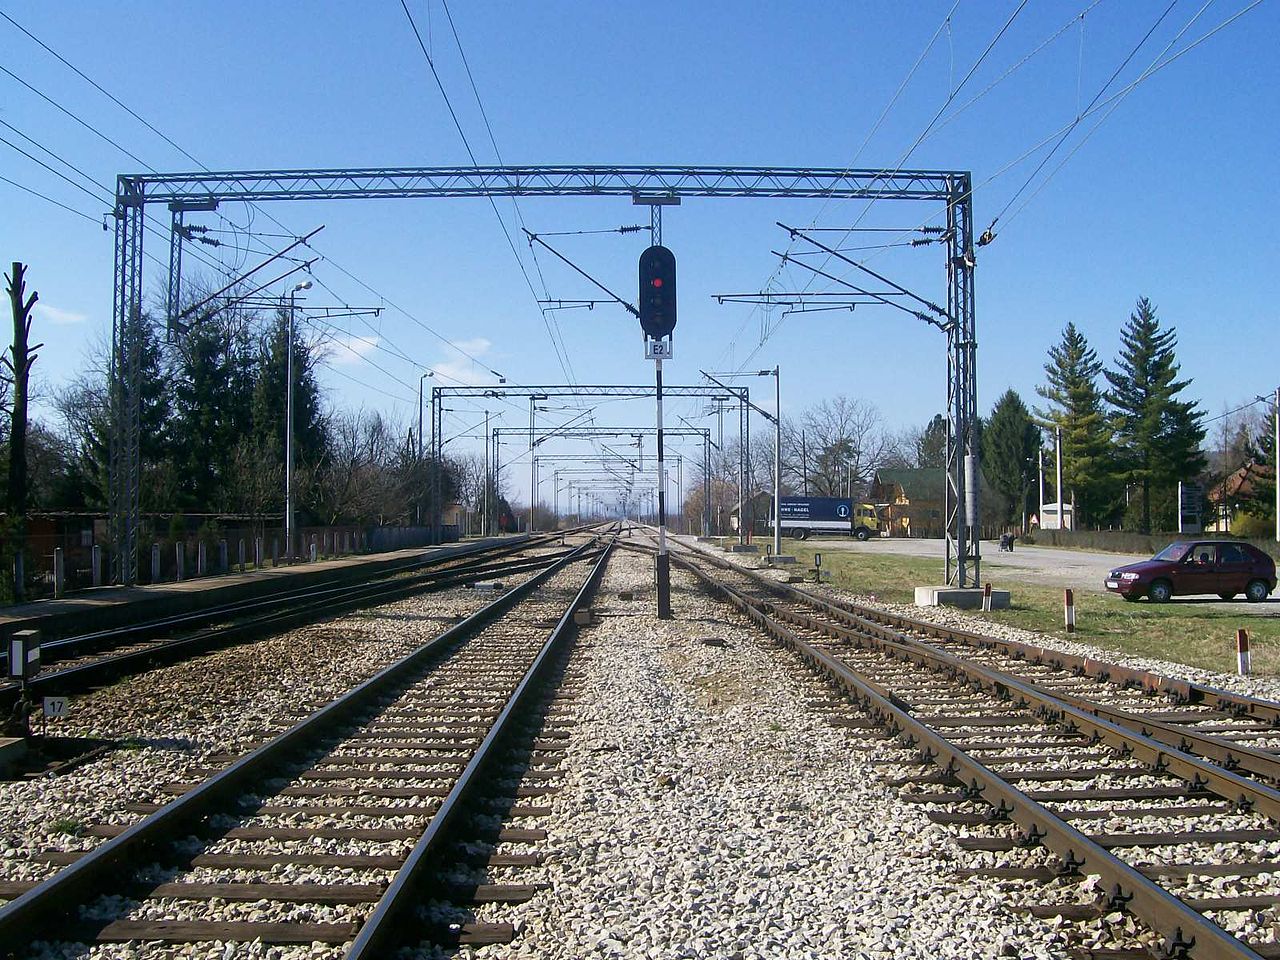 Megújulhat a Zágrábtól a felvételen látható Savski Marof állomásig tartó vasúti pálya Horvátországban (kép forrása: Wikipedia)